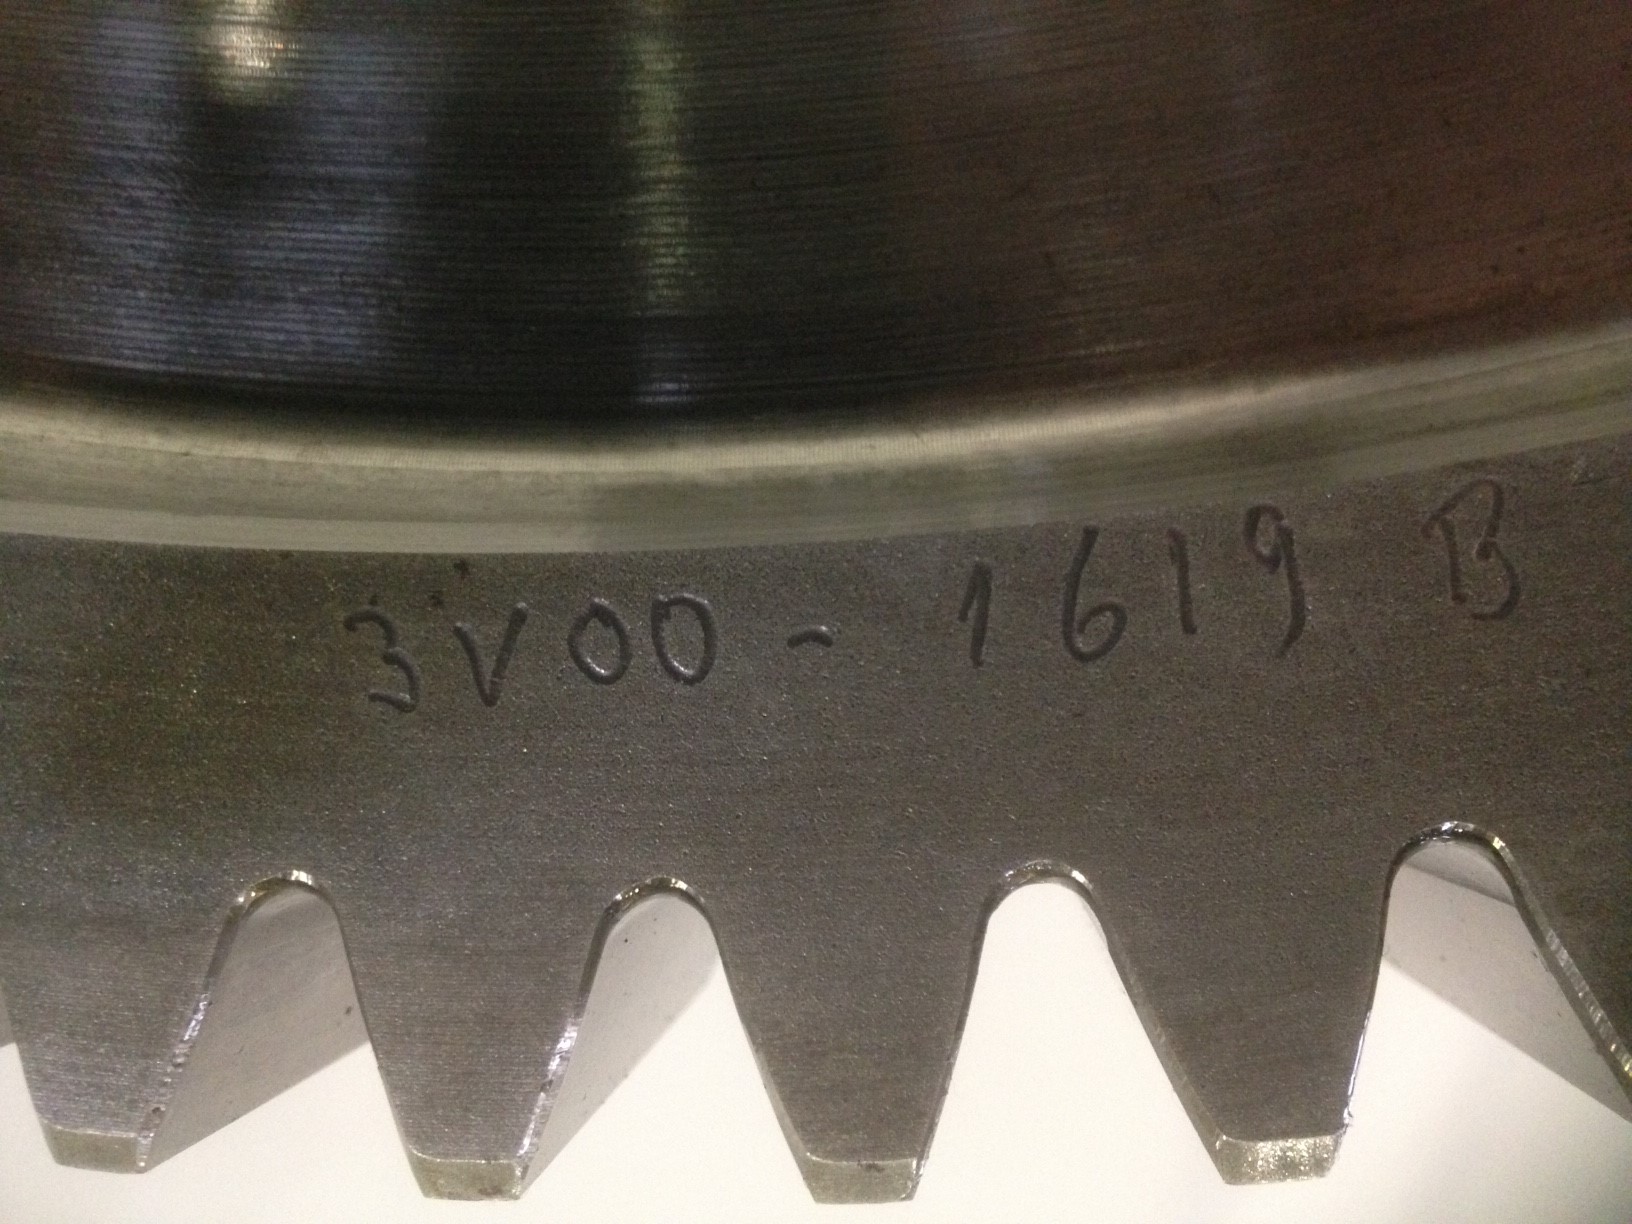 Gear wheel, Wichmann 12V28B